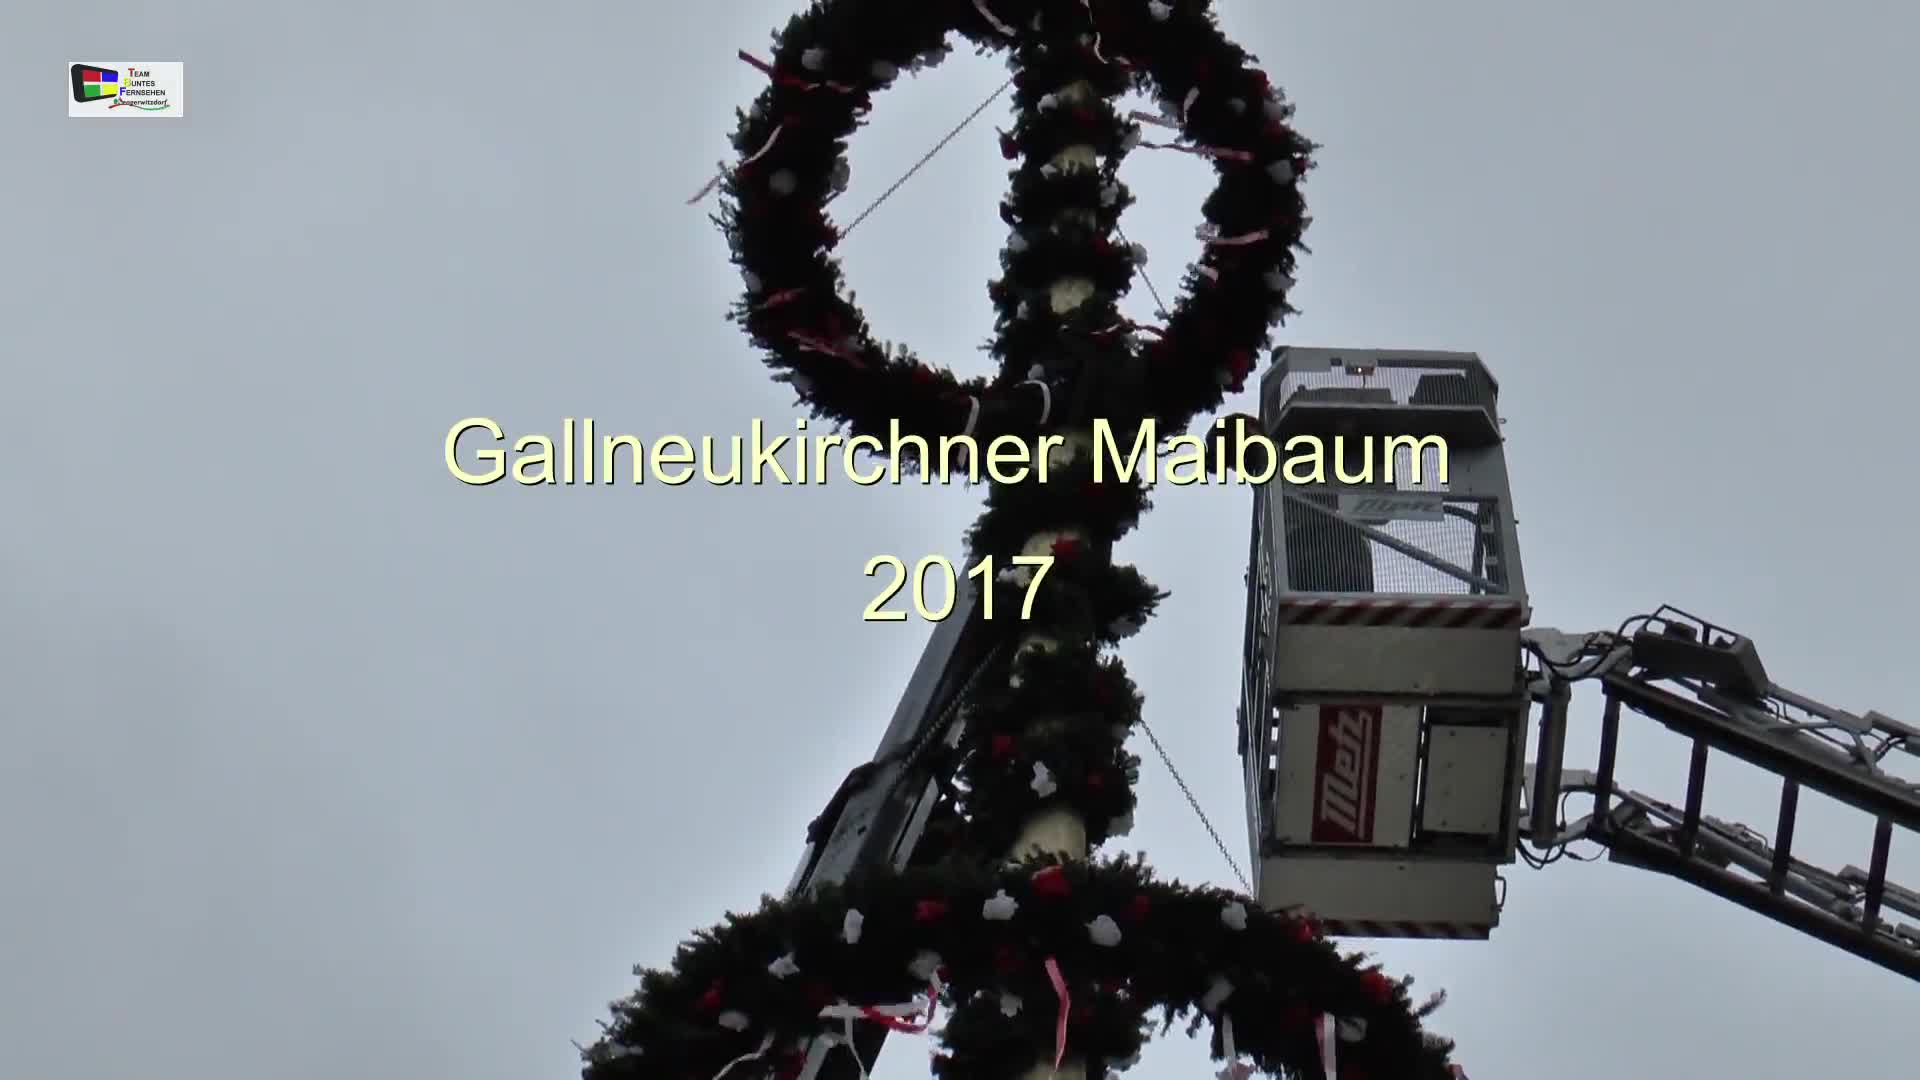 Gallneukirchner Maibaum 2017